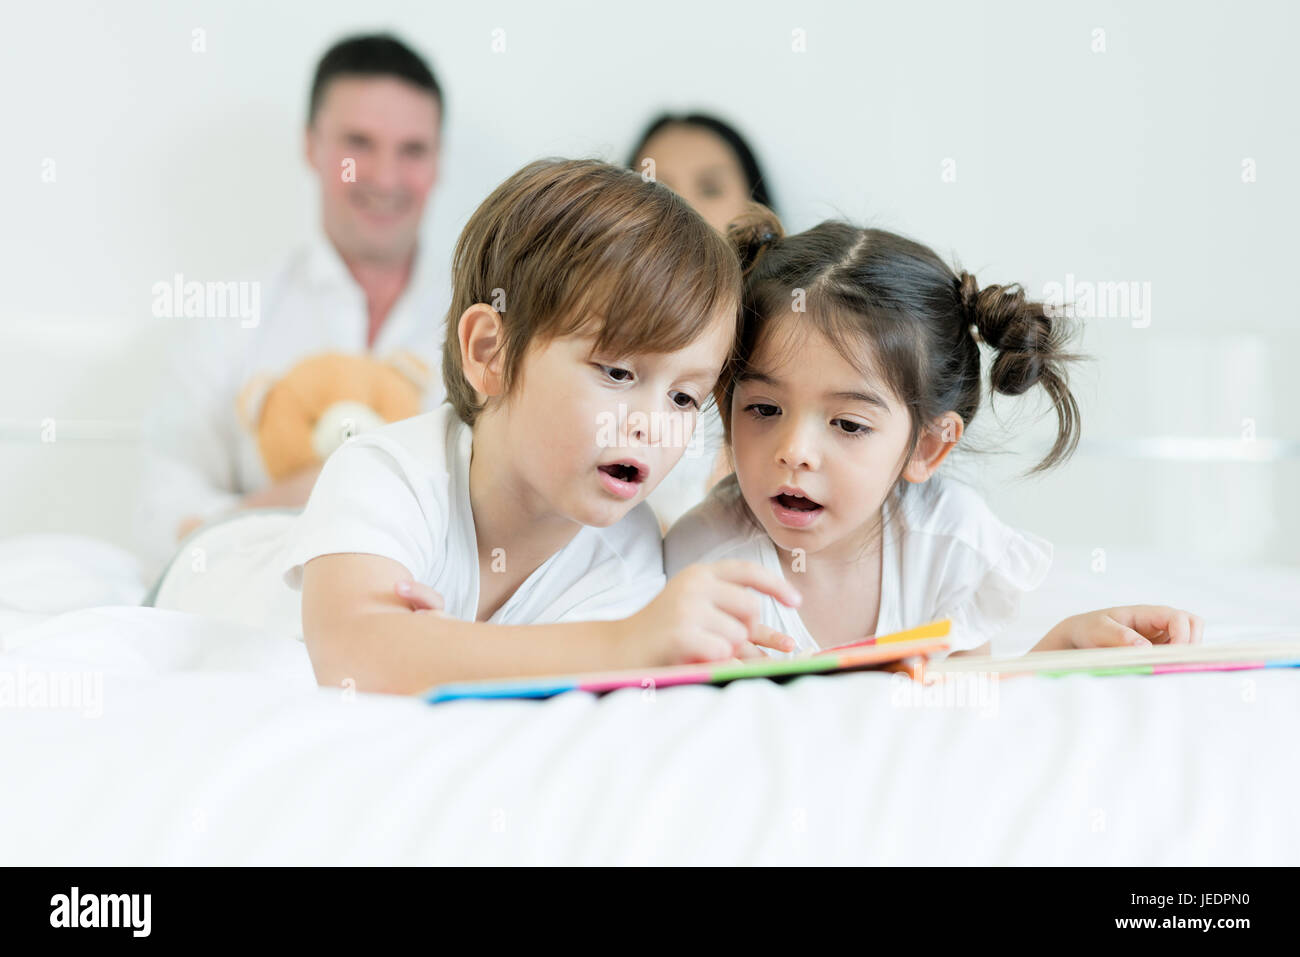 Asiatischen Brüder und asiatische Tochter Lesebuch zusammen auf dem Bett im Schlafzimmer mit Vater und Mutter im Hintergrund. Glückliche Familien-Konzept. Stockfoto